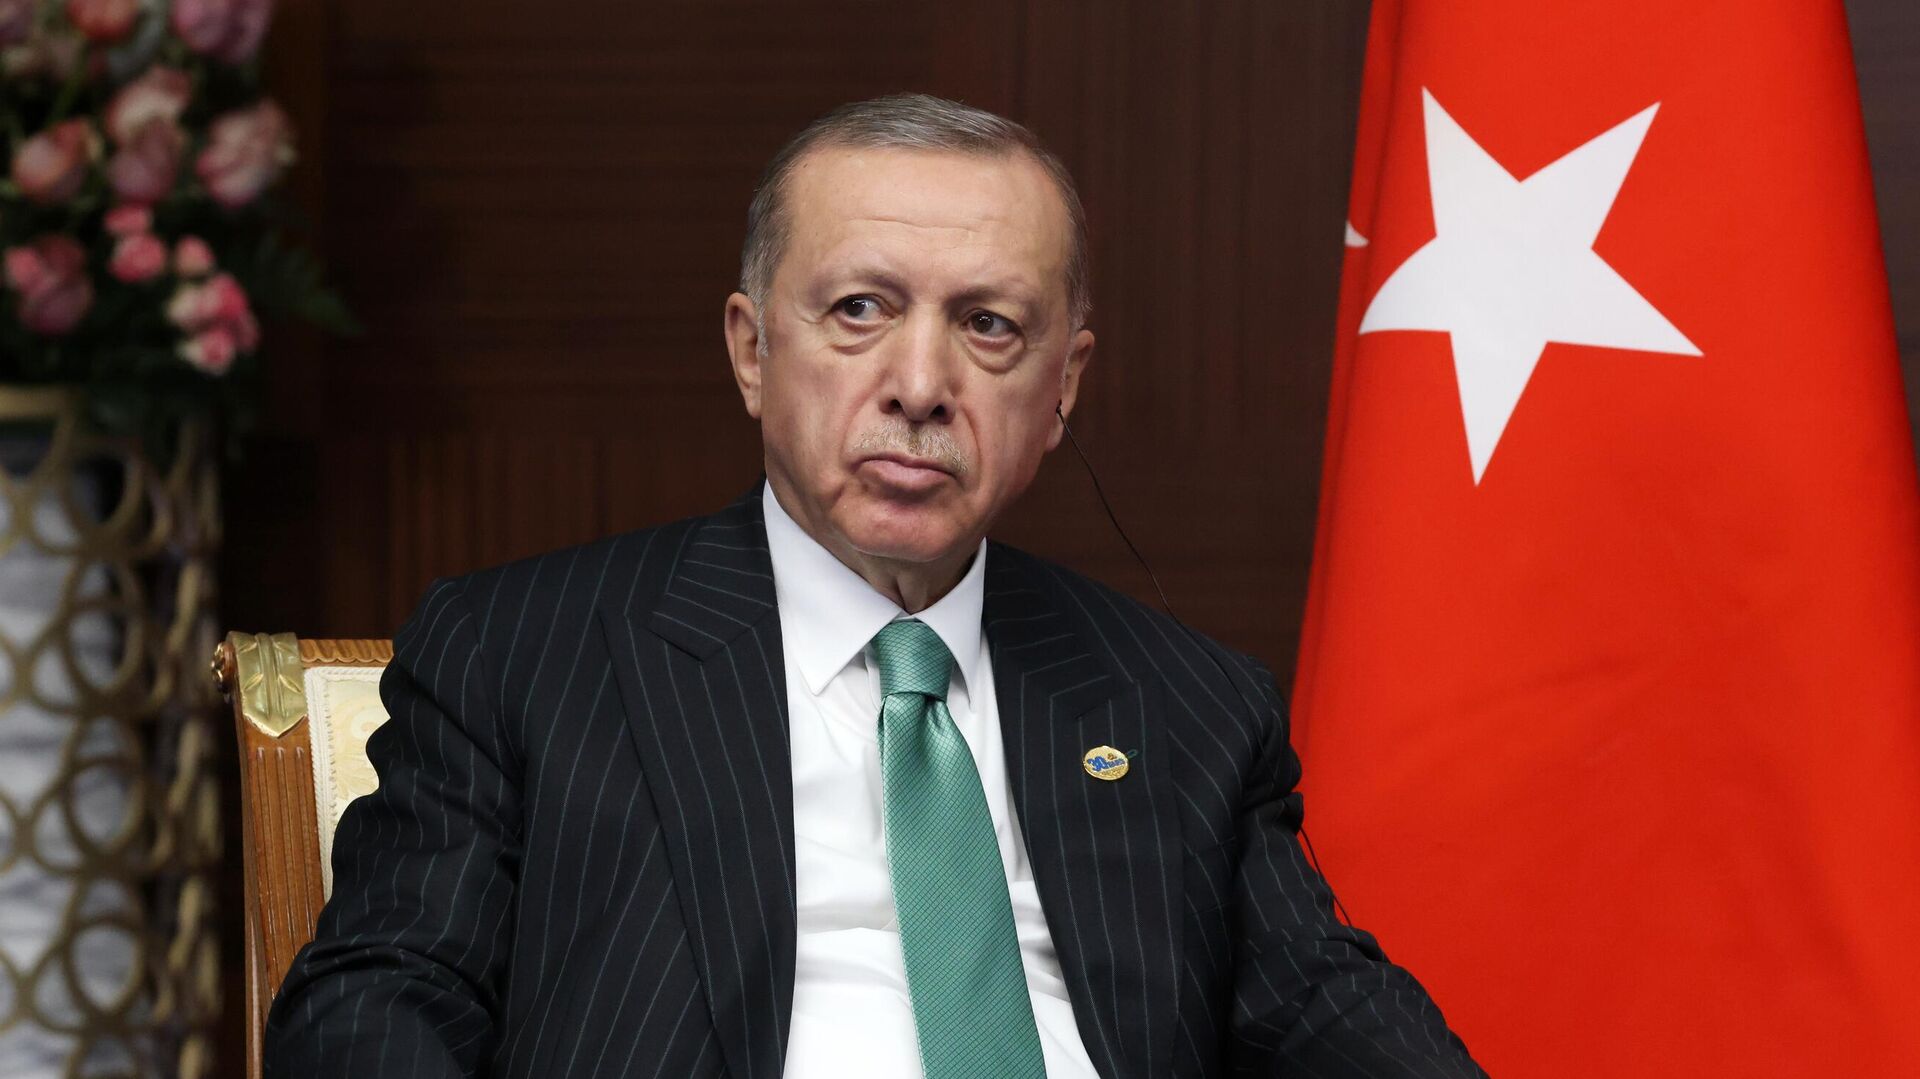 Турецкий лидер Эрдоган отказался общаться с Нетаньяху, но не разрывает связи с Израилем